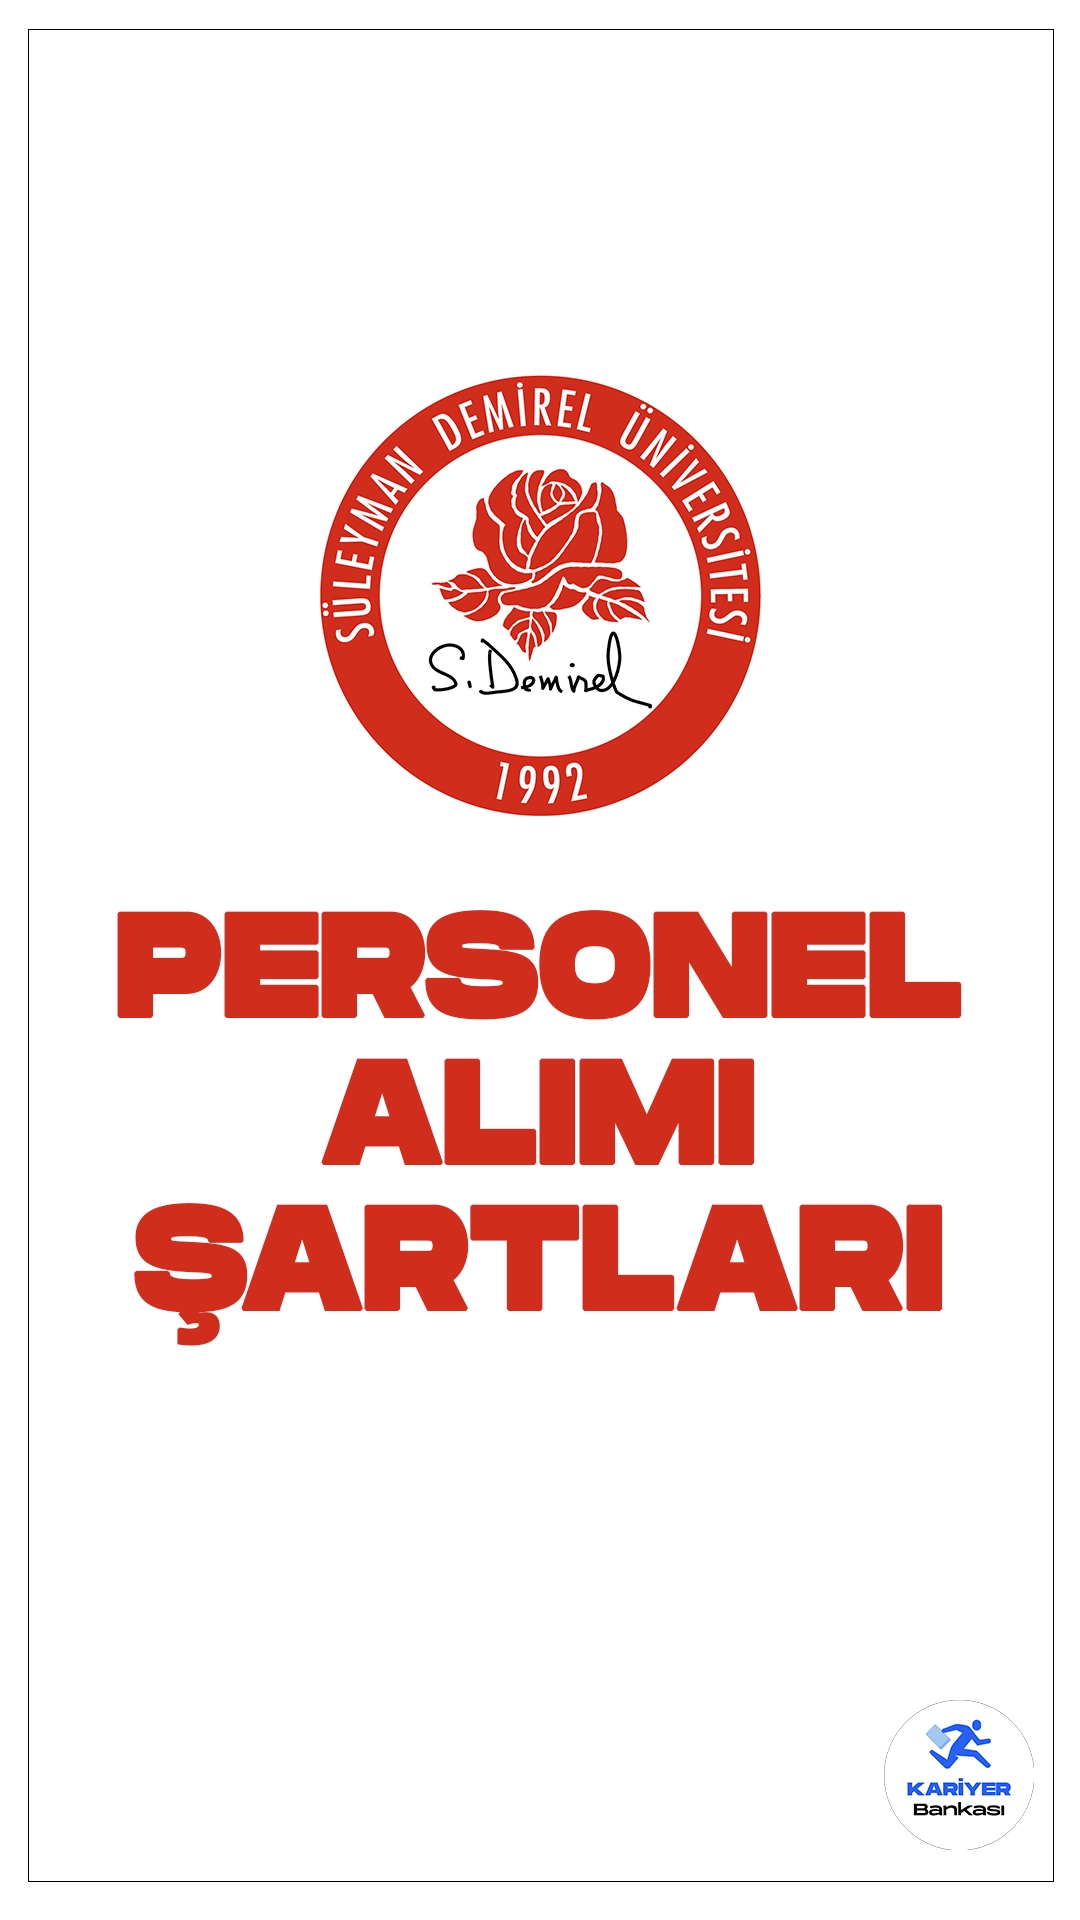 Süleyman Demirel Üniversitesi (SDÜ) personel alımı başvuruları sürüyor. Başvuru şartları ve kontenjan dağılımına dair detaylar bu haberimizde.